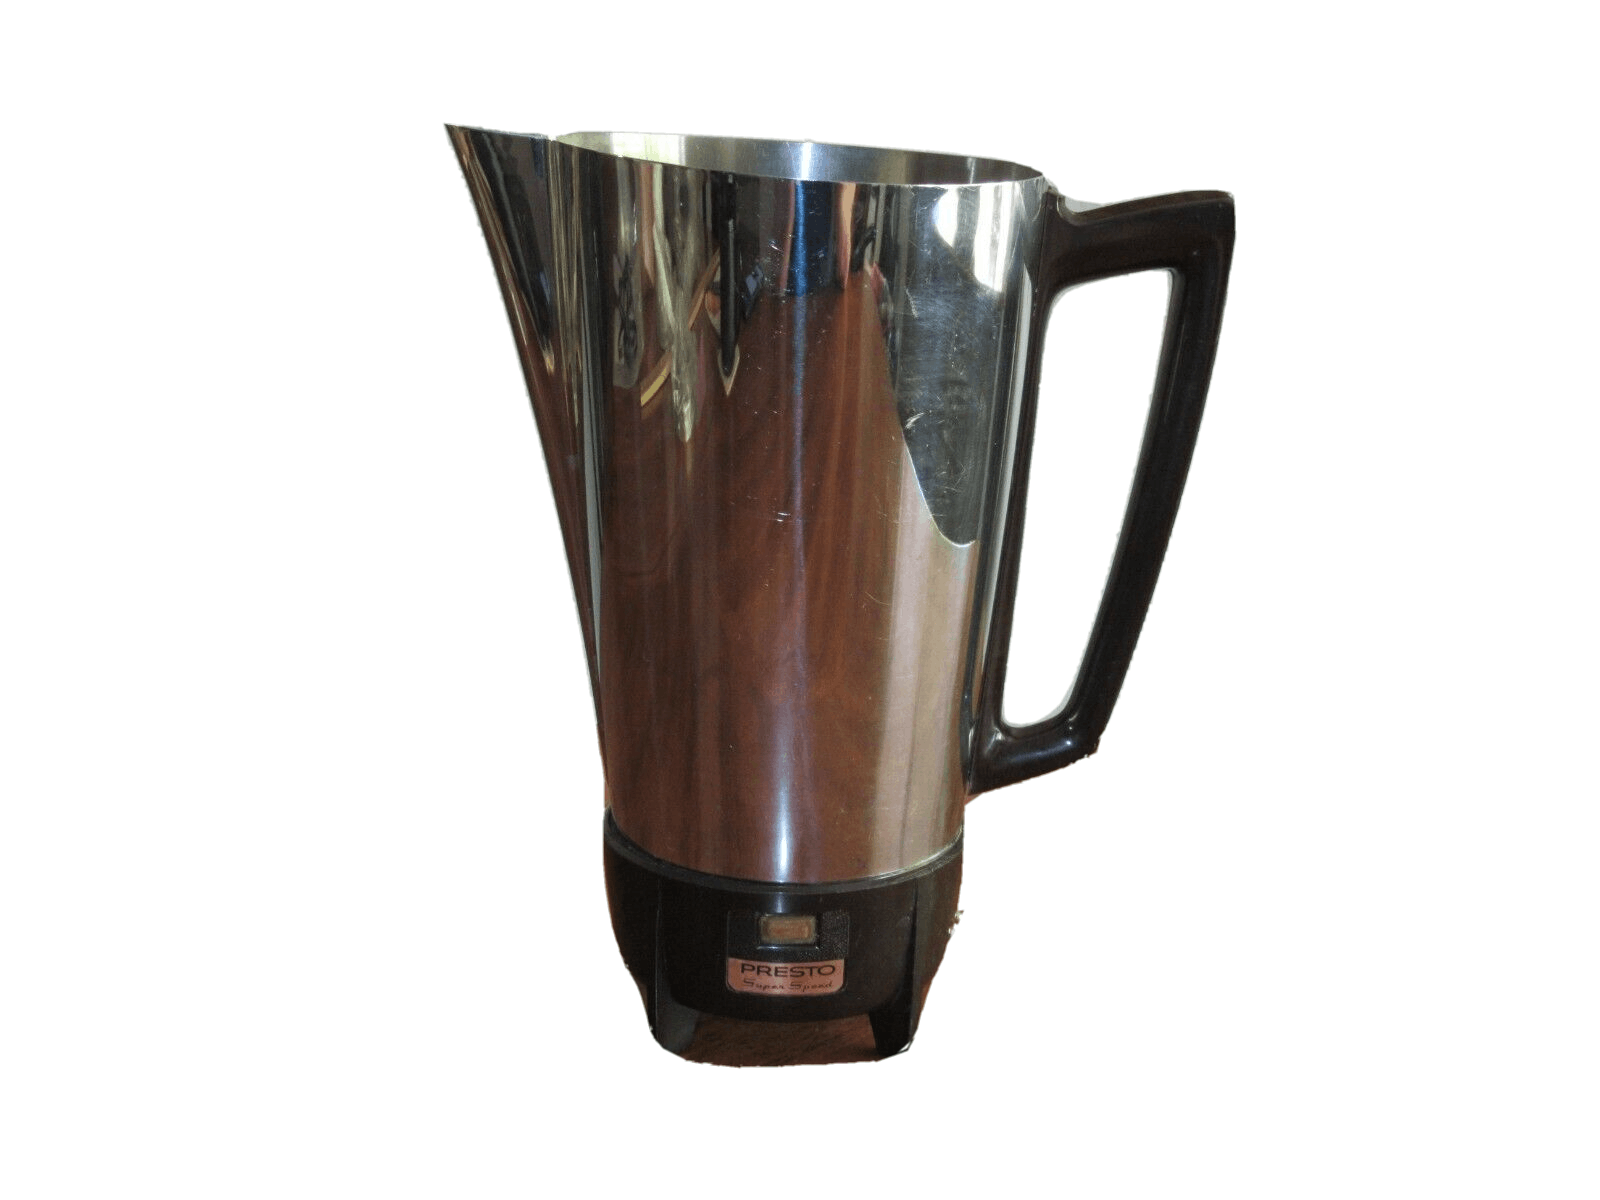 presto, Kitchen, Presto 2 Cup Coffee Maker Percolator Stainless